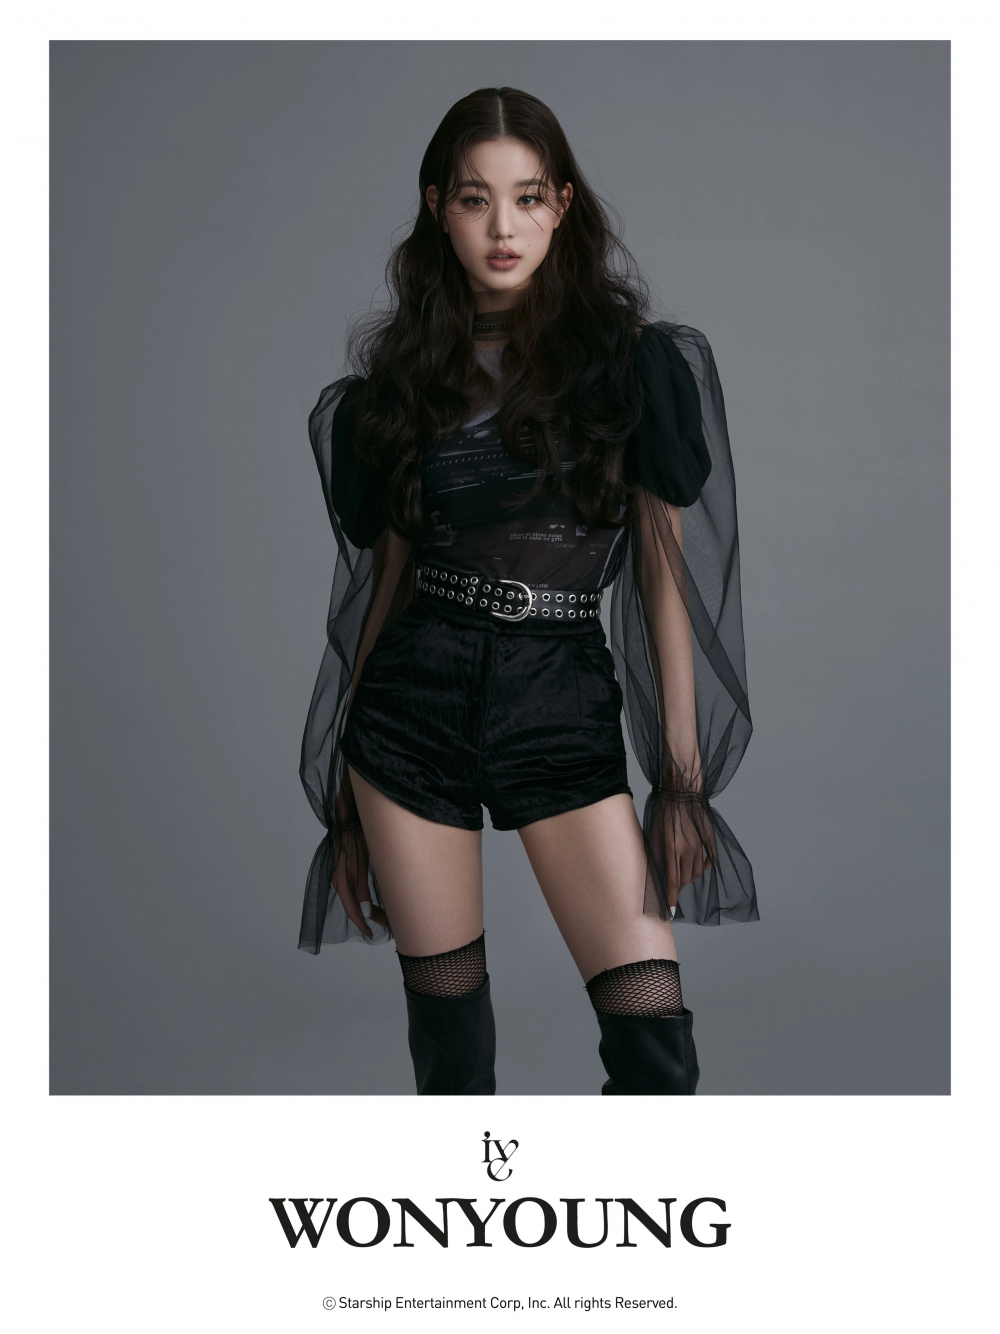 Чан Вонён дебютирует в новой женской группе Starship Entertainment IVE